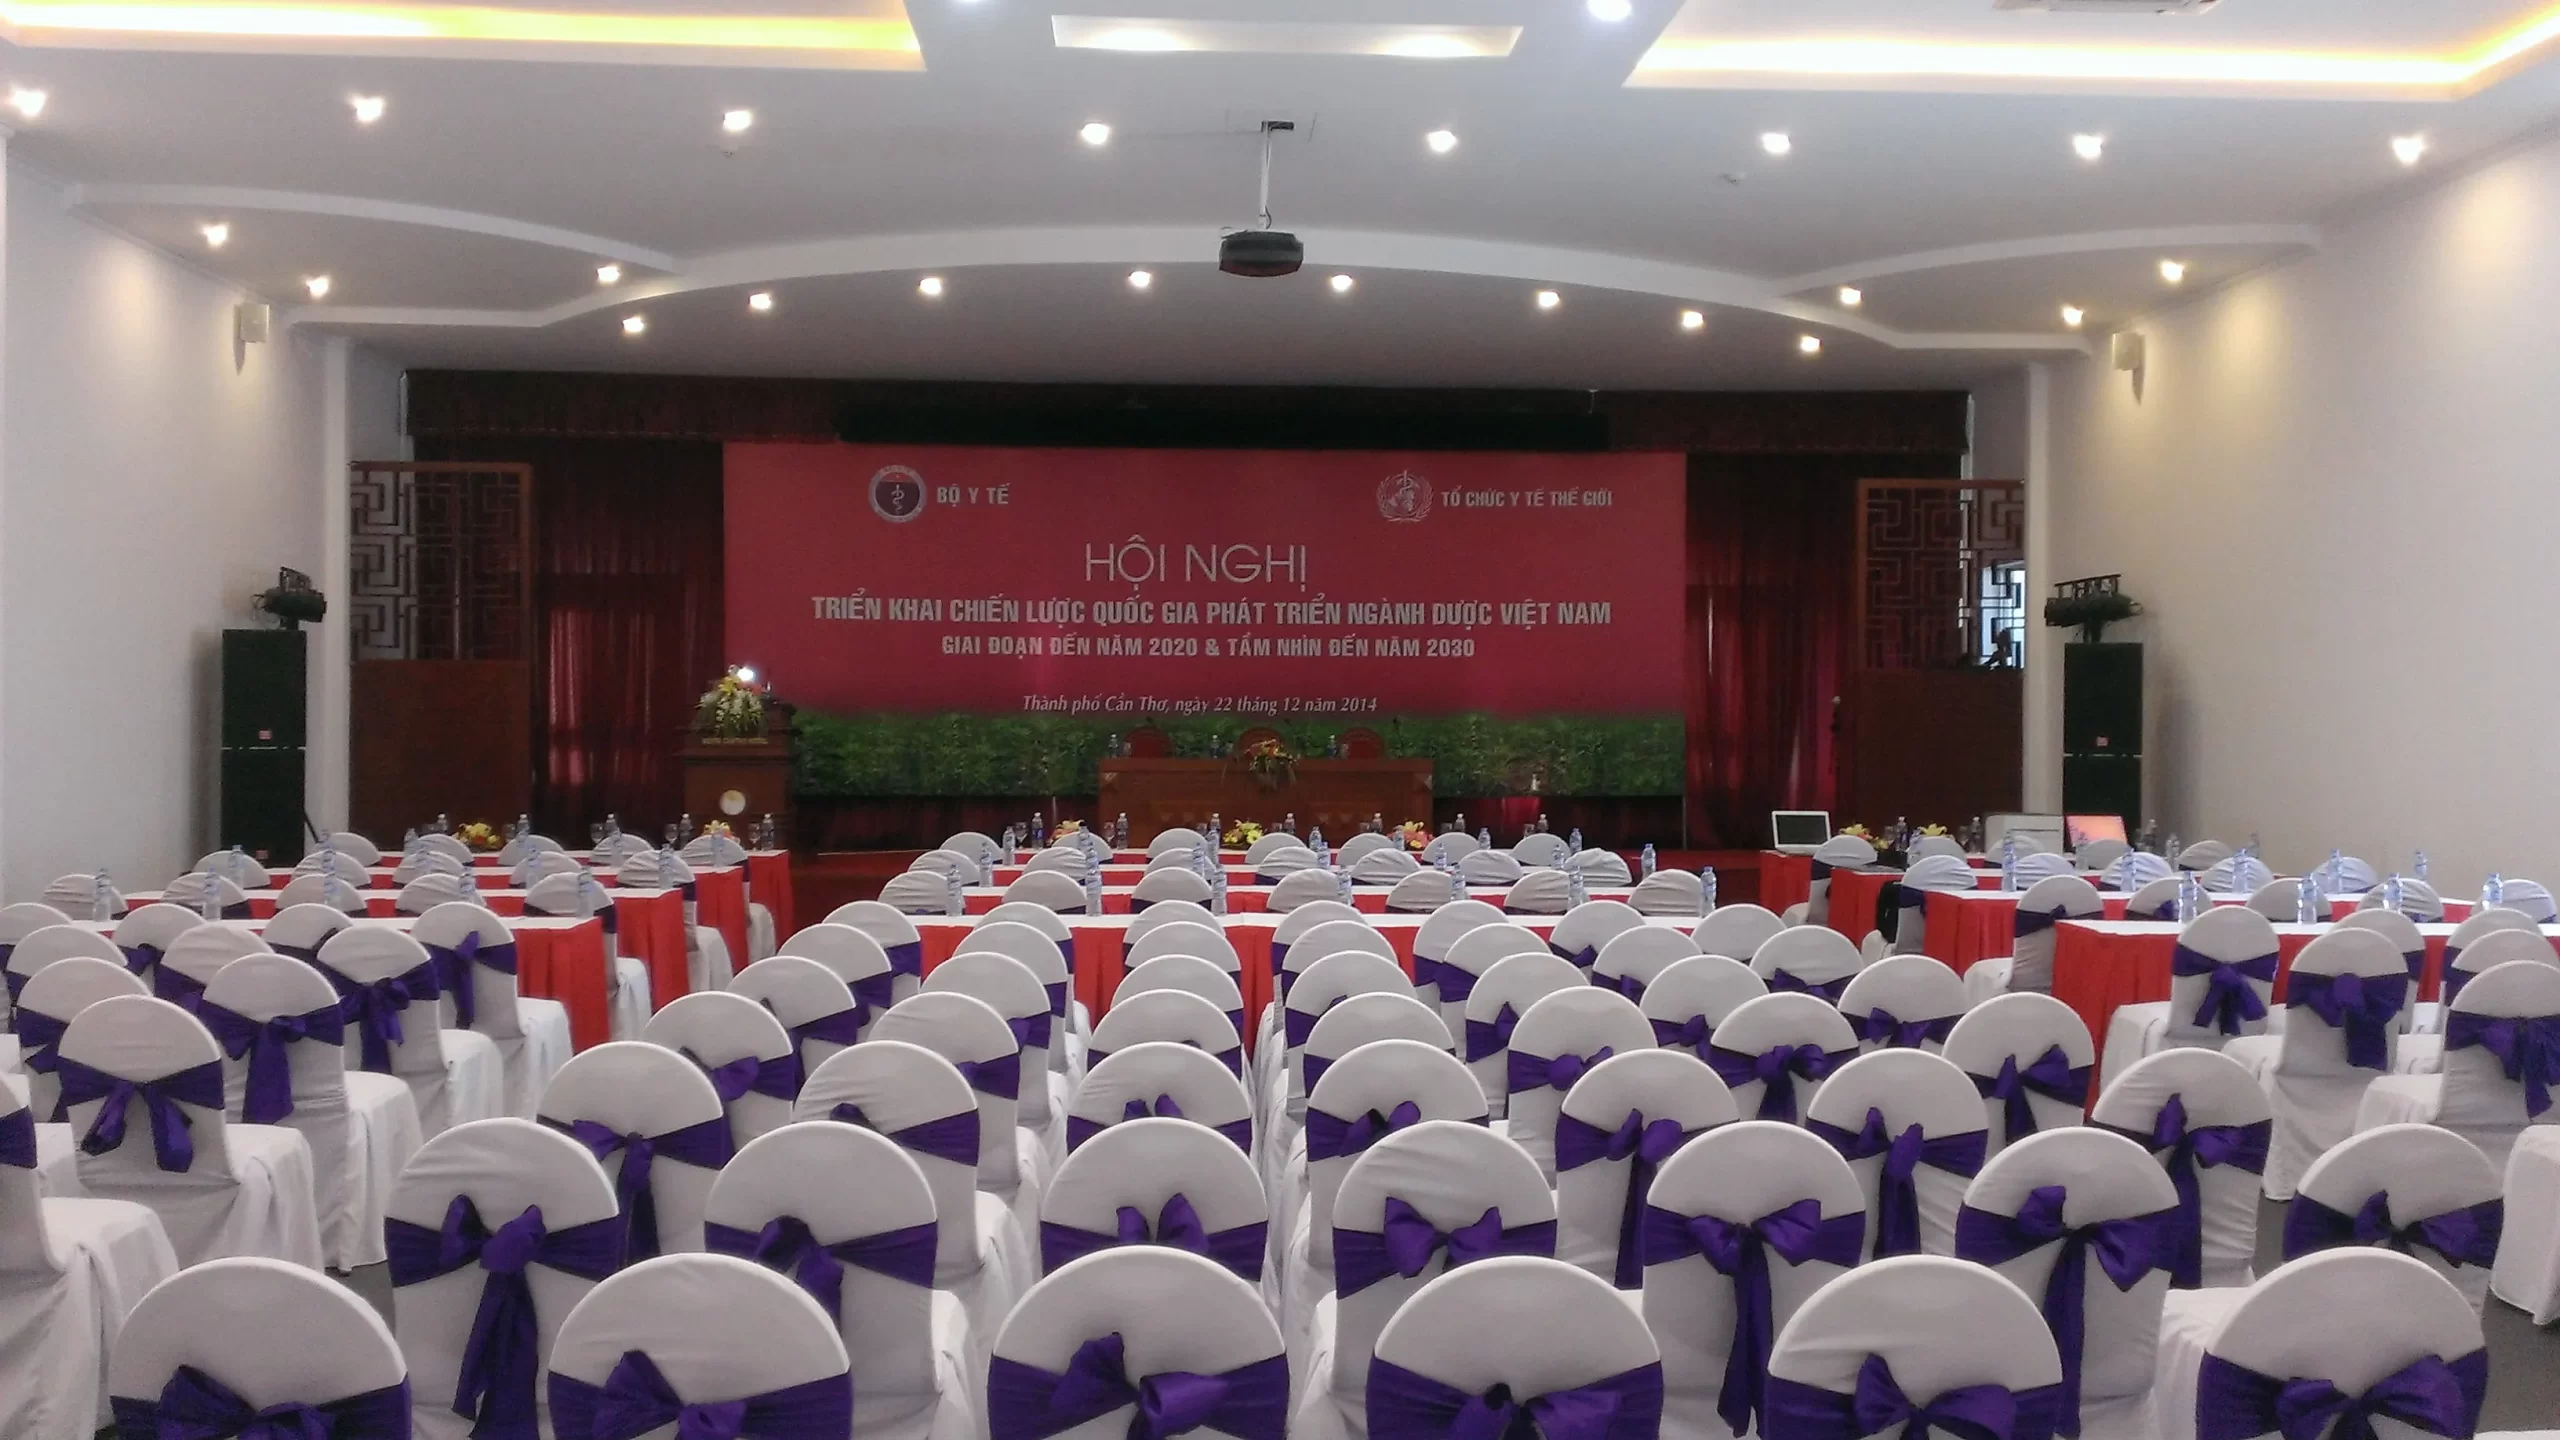 Tổ chức hội nghị tại Phú Thọ uy tín chuyên nghiệp